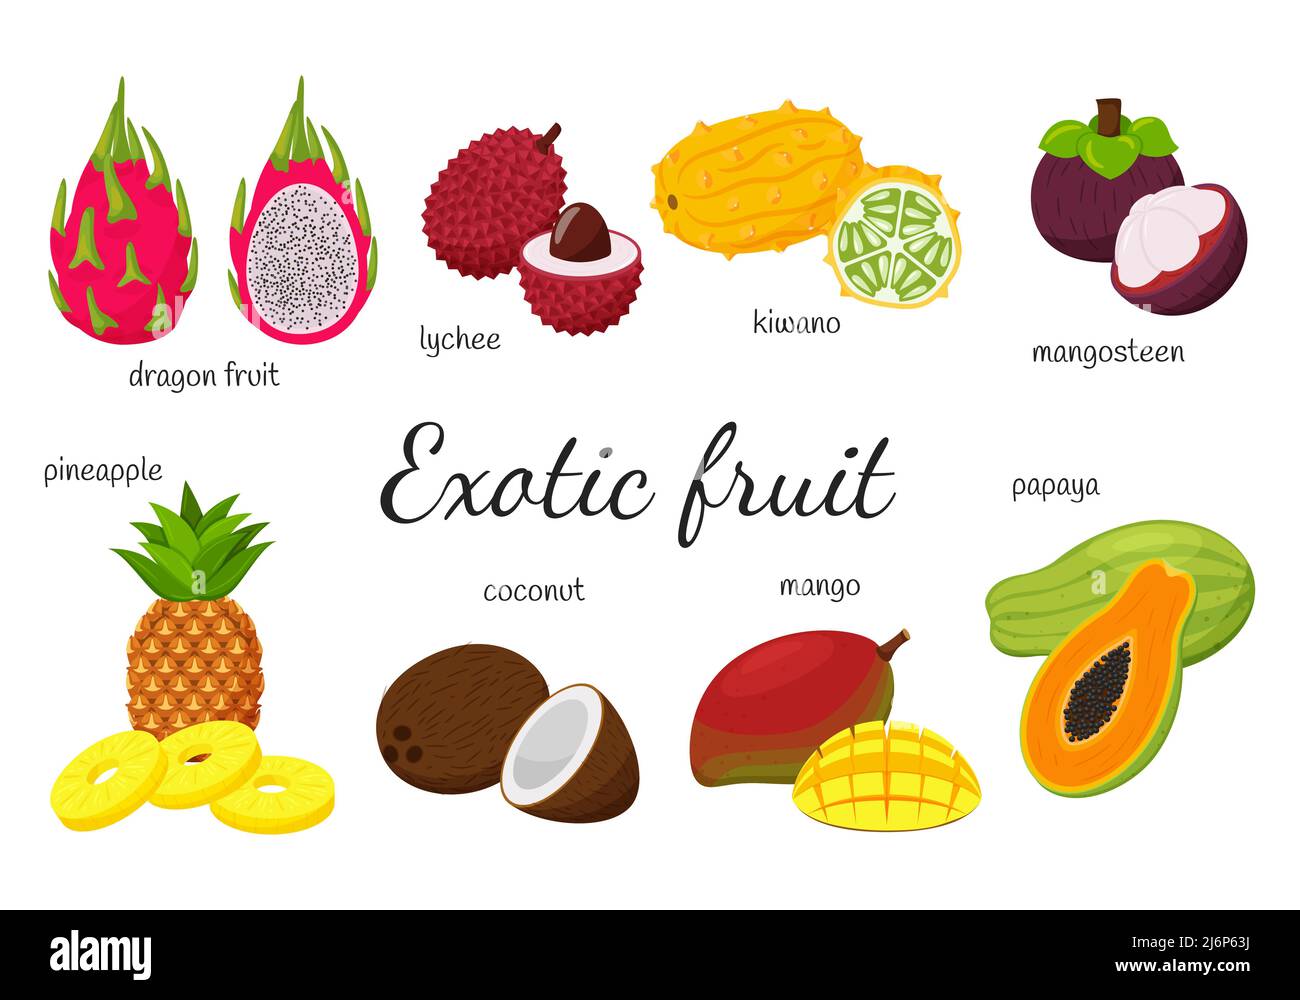 Una serie di frutti tropicali esotici. 8 frutti, interi e spaccati. Mango, Papaya, frutta del drago, kiwano, lychee, mangosteen, cocco, ananas. Collezione in Illustrazione Vettoriale